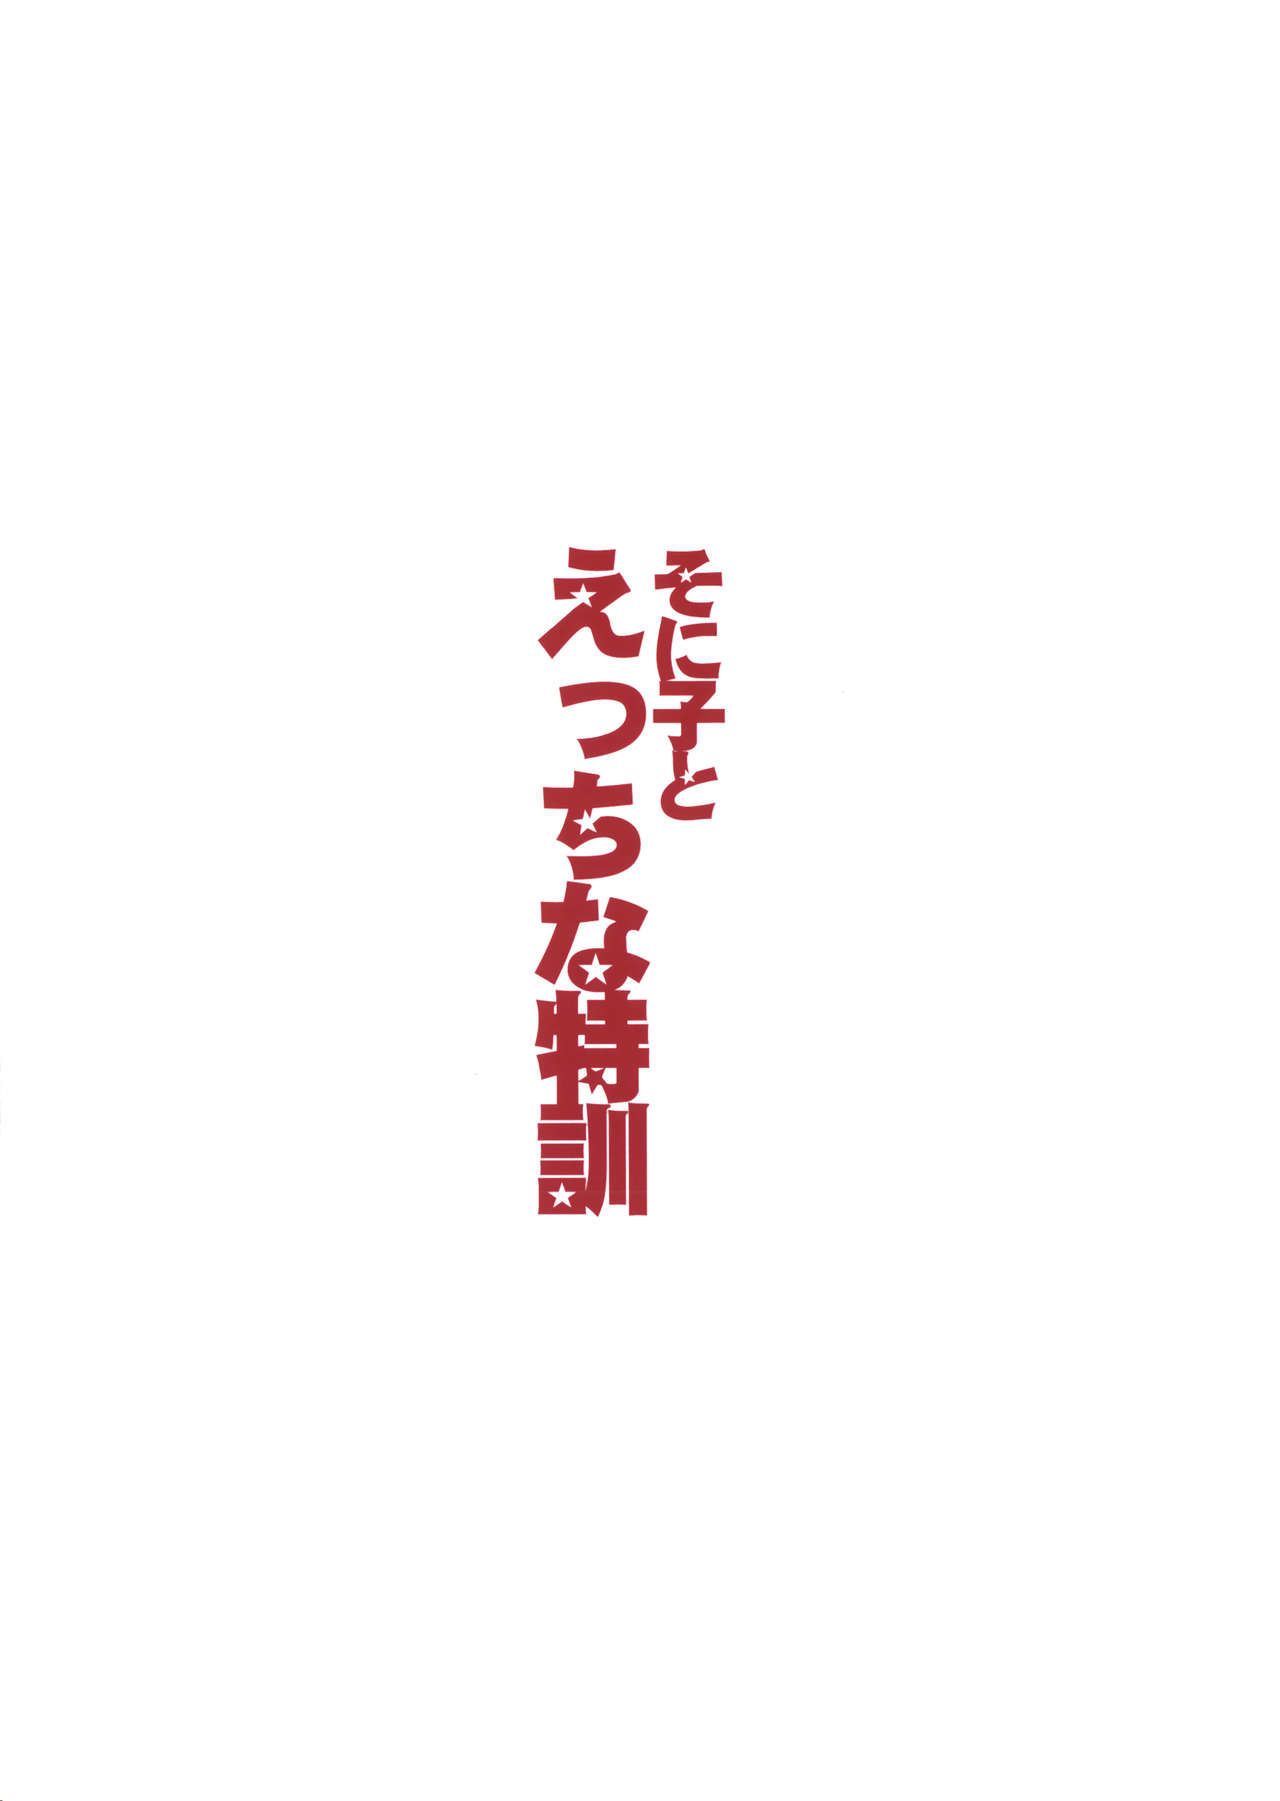 (sc63) rosso corona (ishigami kazui) Sonico Per Ecchi na tokkun Lascivo Formazione Con Sonico (super sonico) biribiri